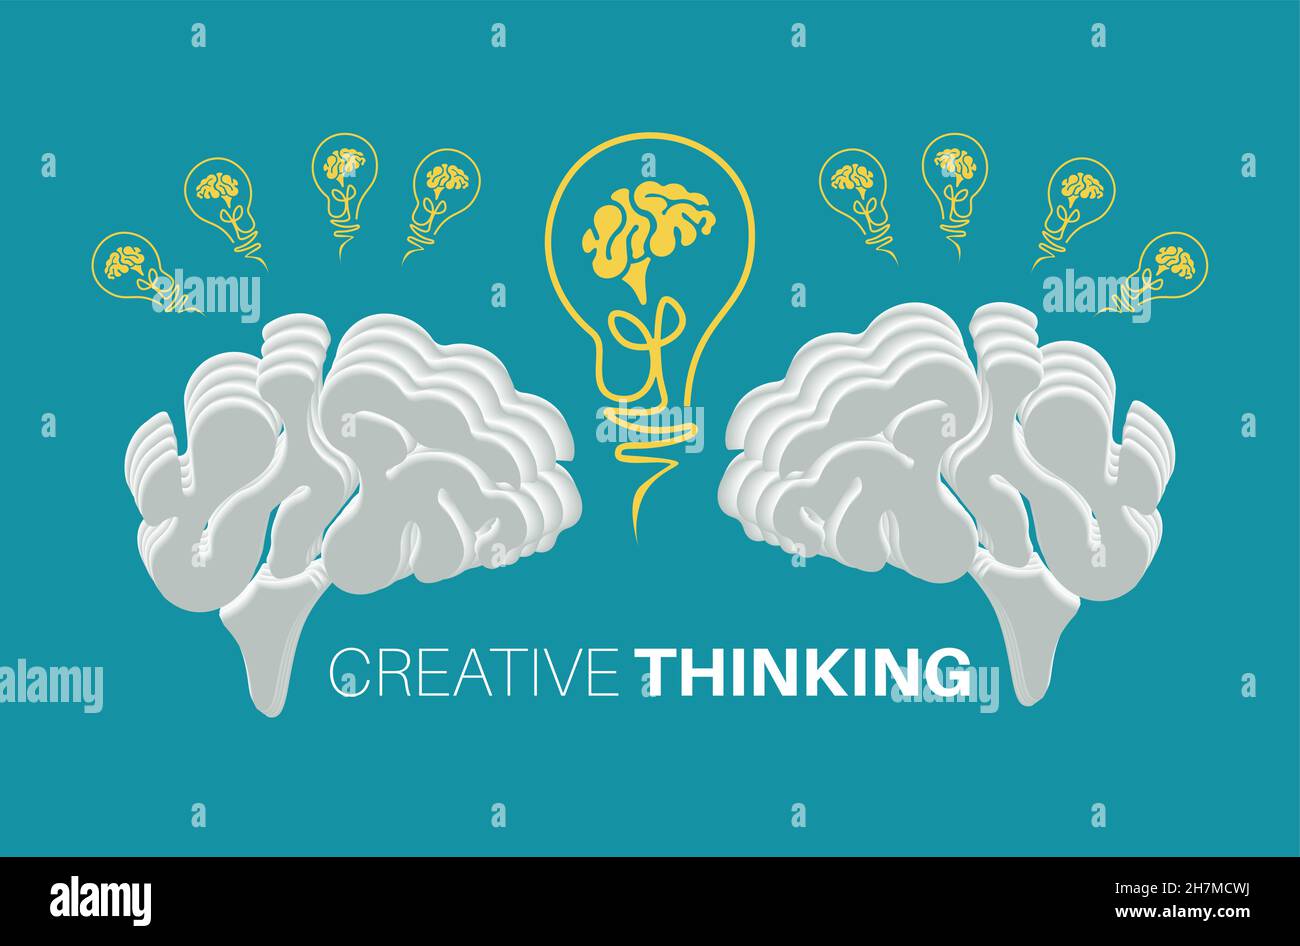 Kreatives Denken, kreatives Ideenkonzept mit Gehirnlampen, Hintergrund. Flaches Design. Perfekt für Poster, Flyer, Präsentationen oder Broschüren. Stock Vektor